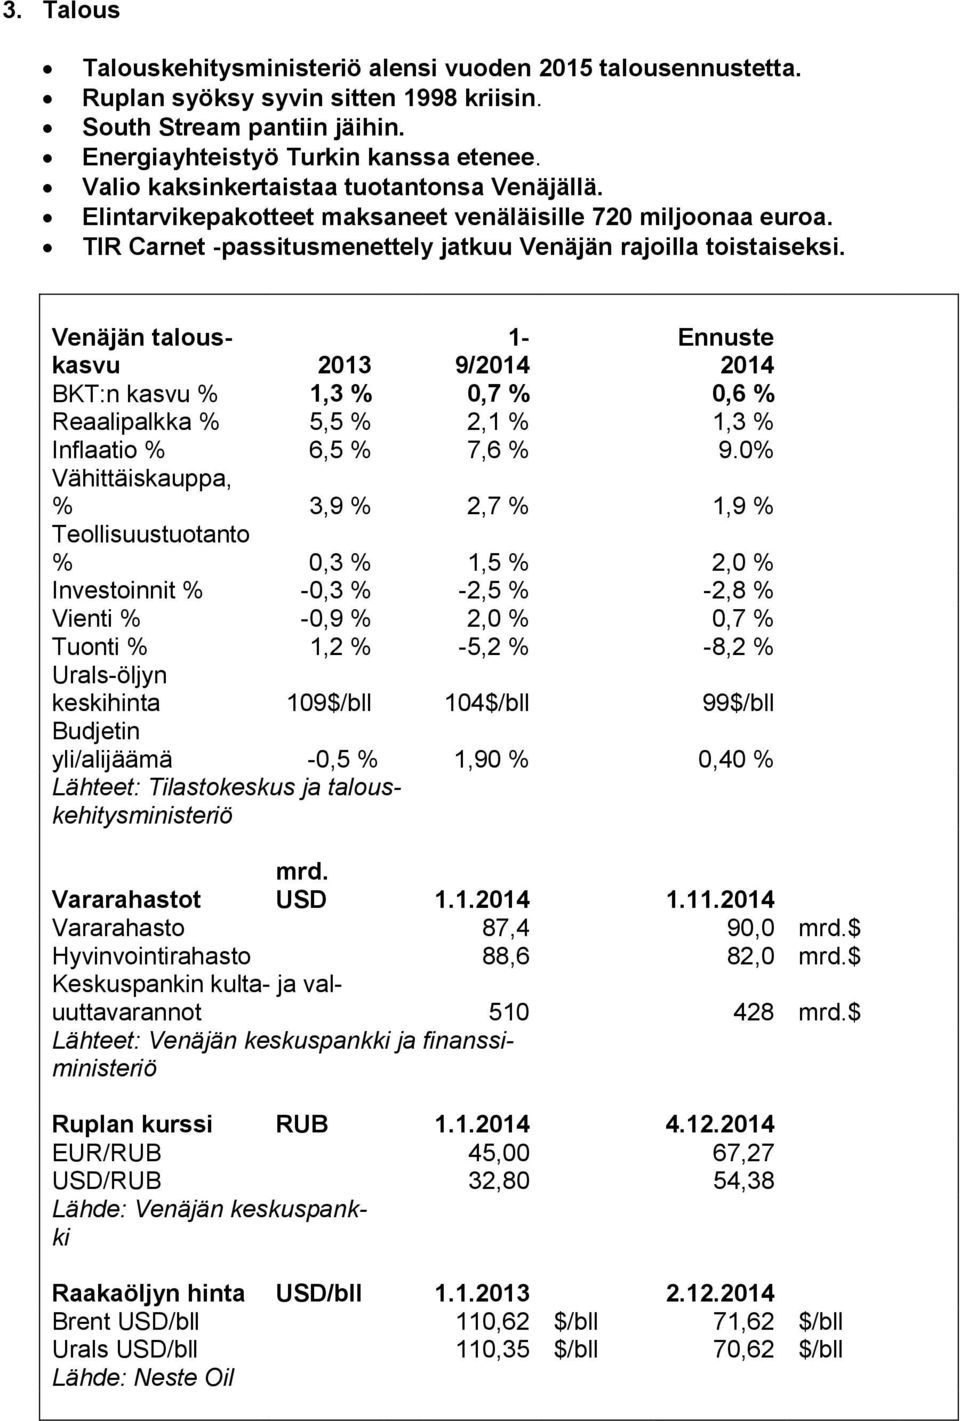 Venäjän talouskasvu 2013 1-9/2014 Ennuste 2014 BKT:n kasvu % 1,3 % 0,7 % 0,6 % Reaalipalkka % 5,5 % 2,1 % 1,3 % Inflaatio % 6,5 % 7,6 % 9.